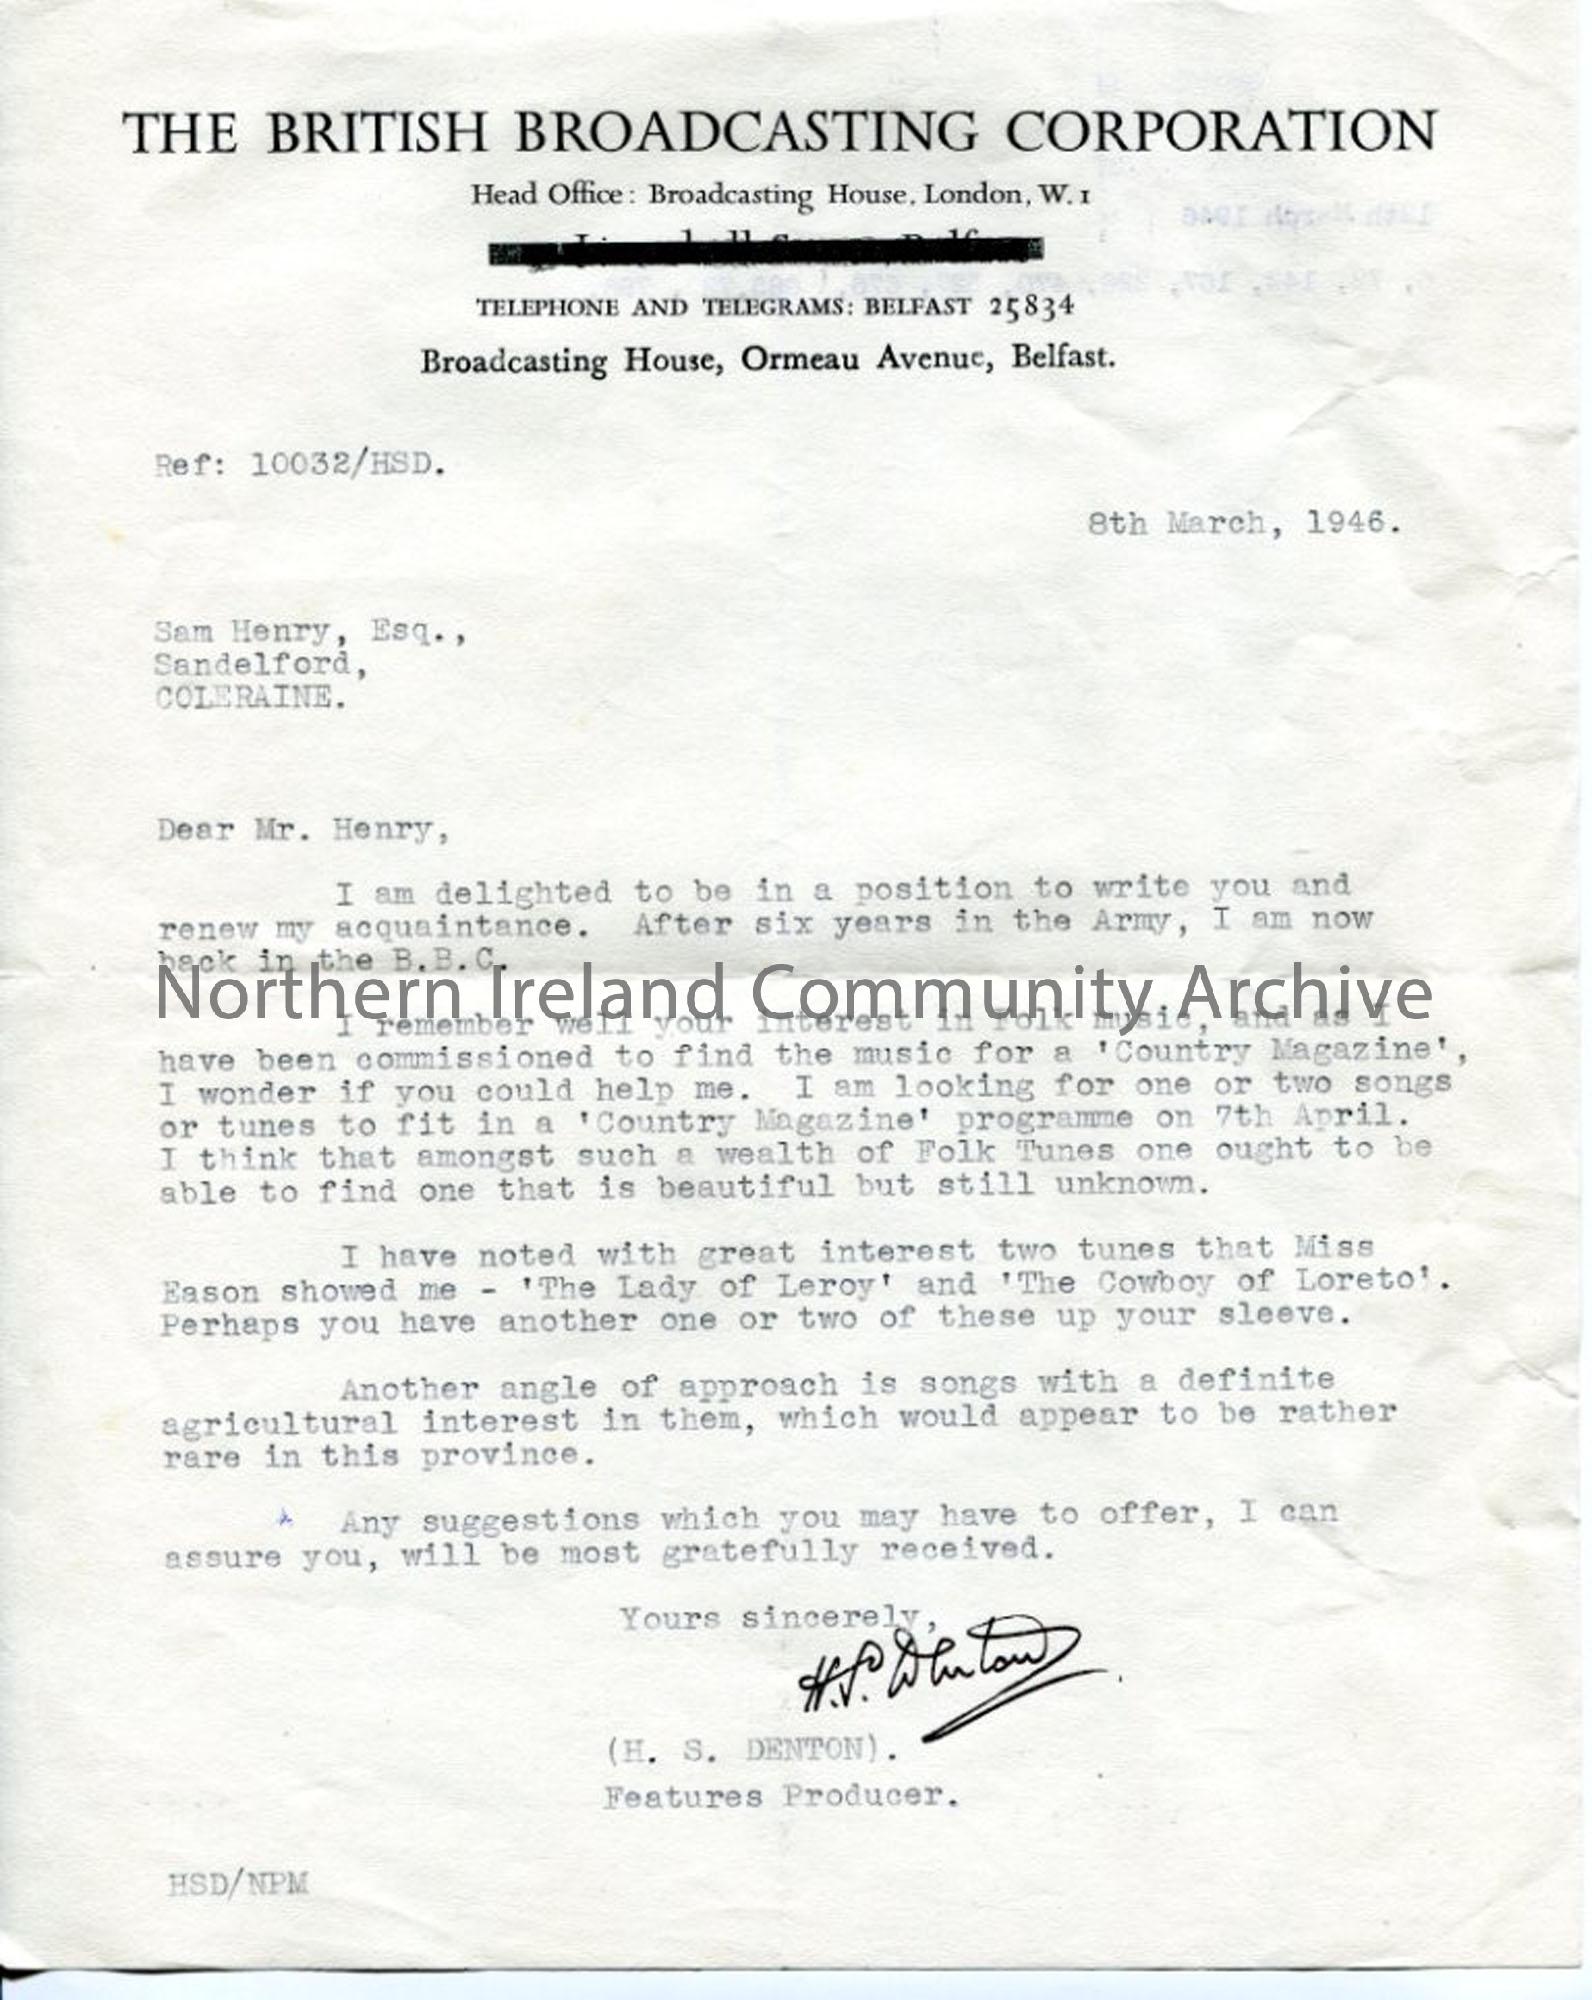 Letter from H. S. Denton, 8.3.1946